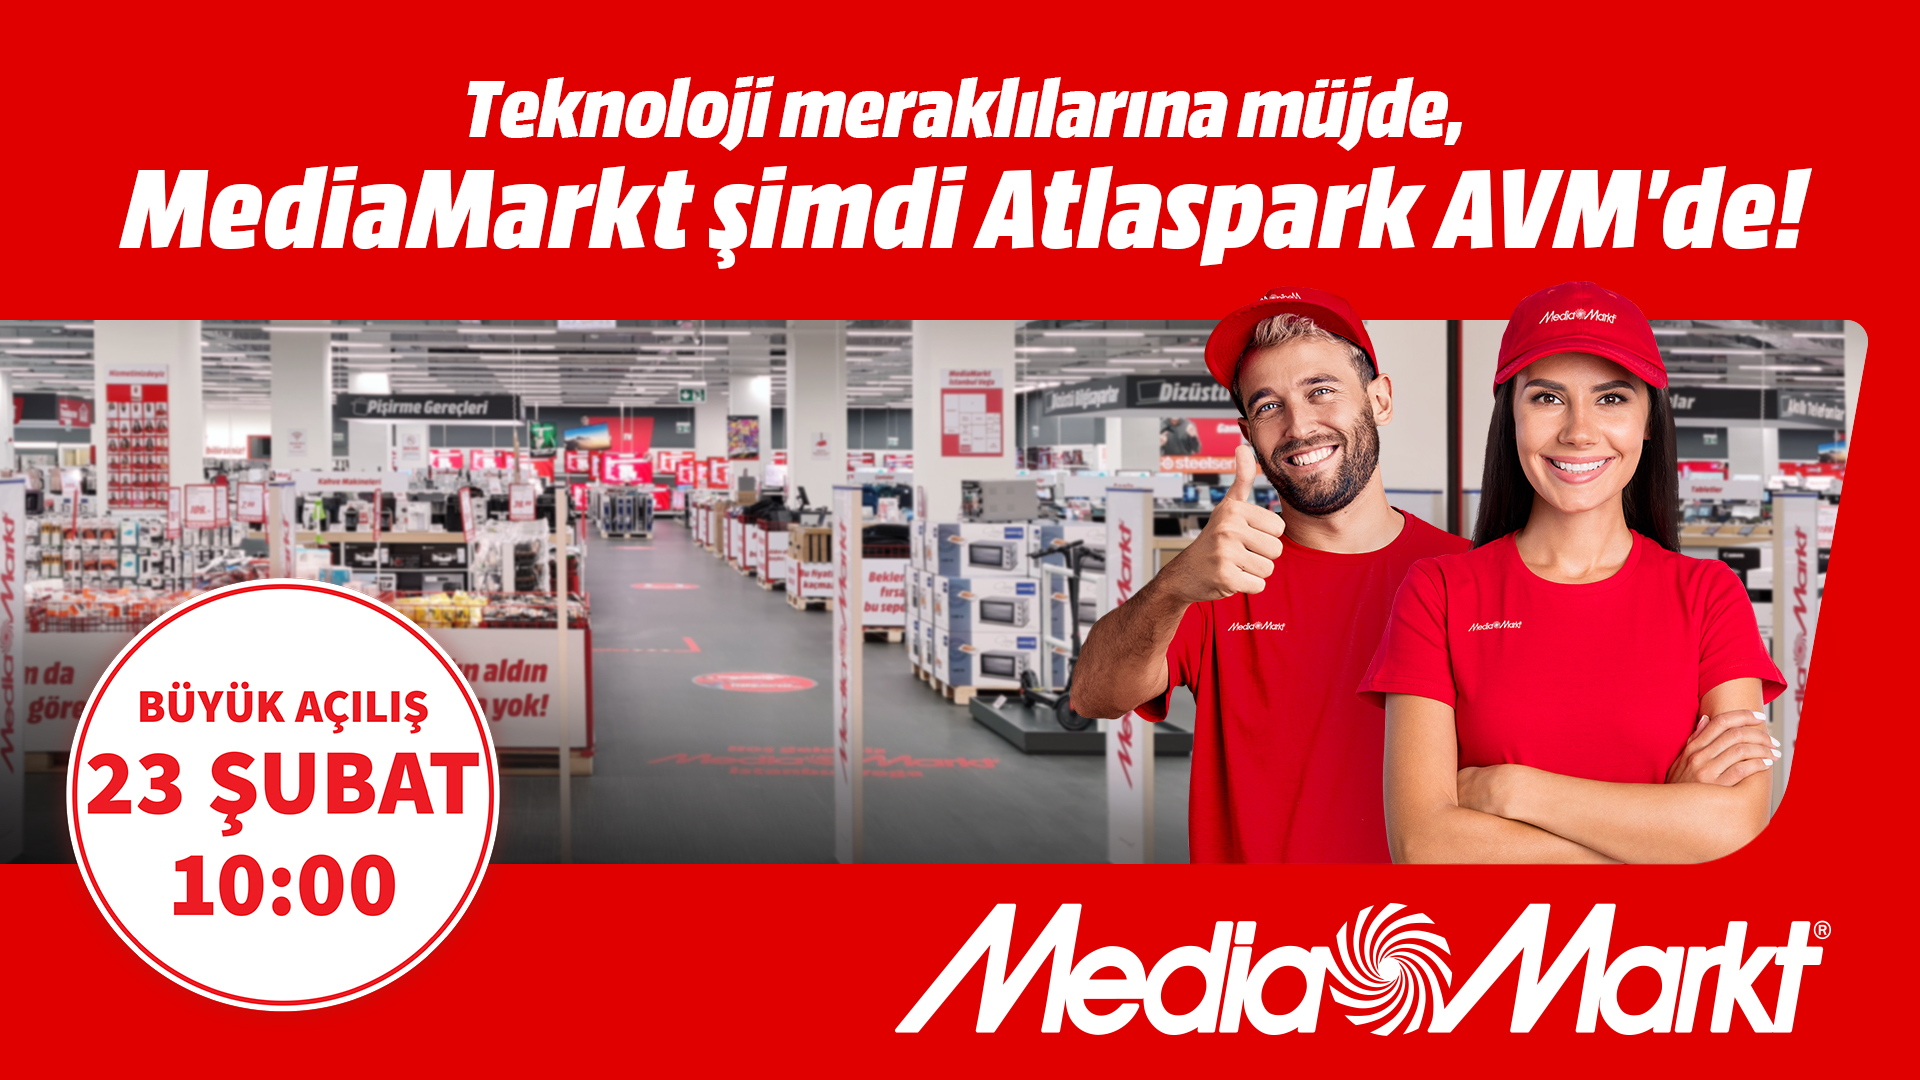 MediaMarkt Atlaspark AVM